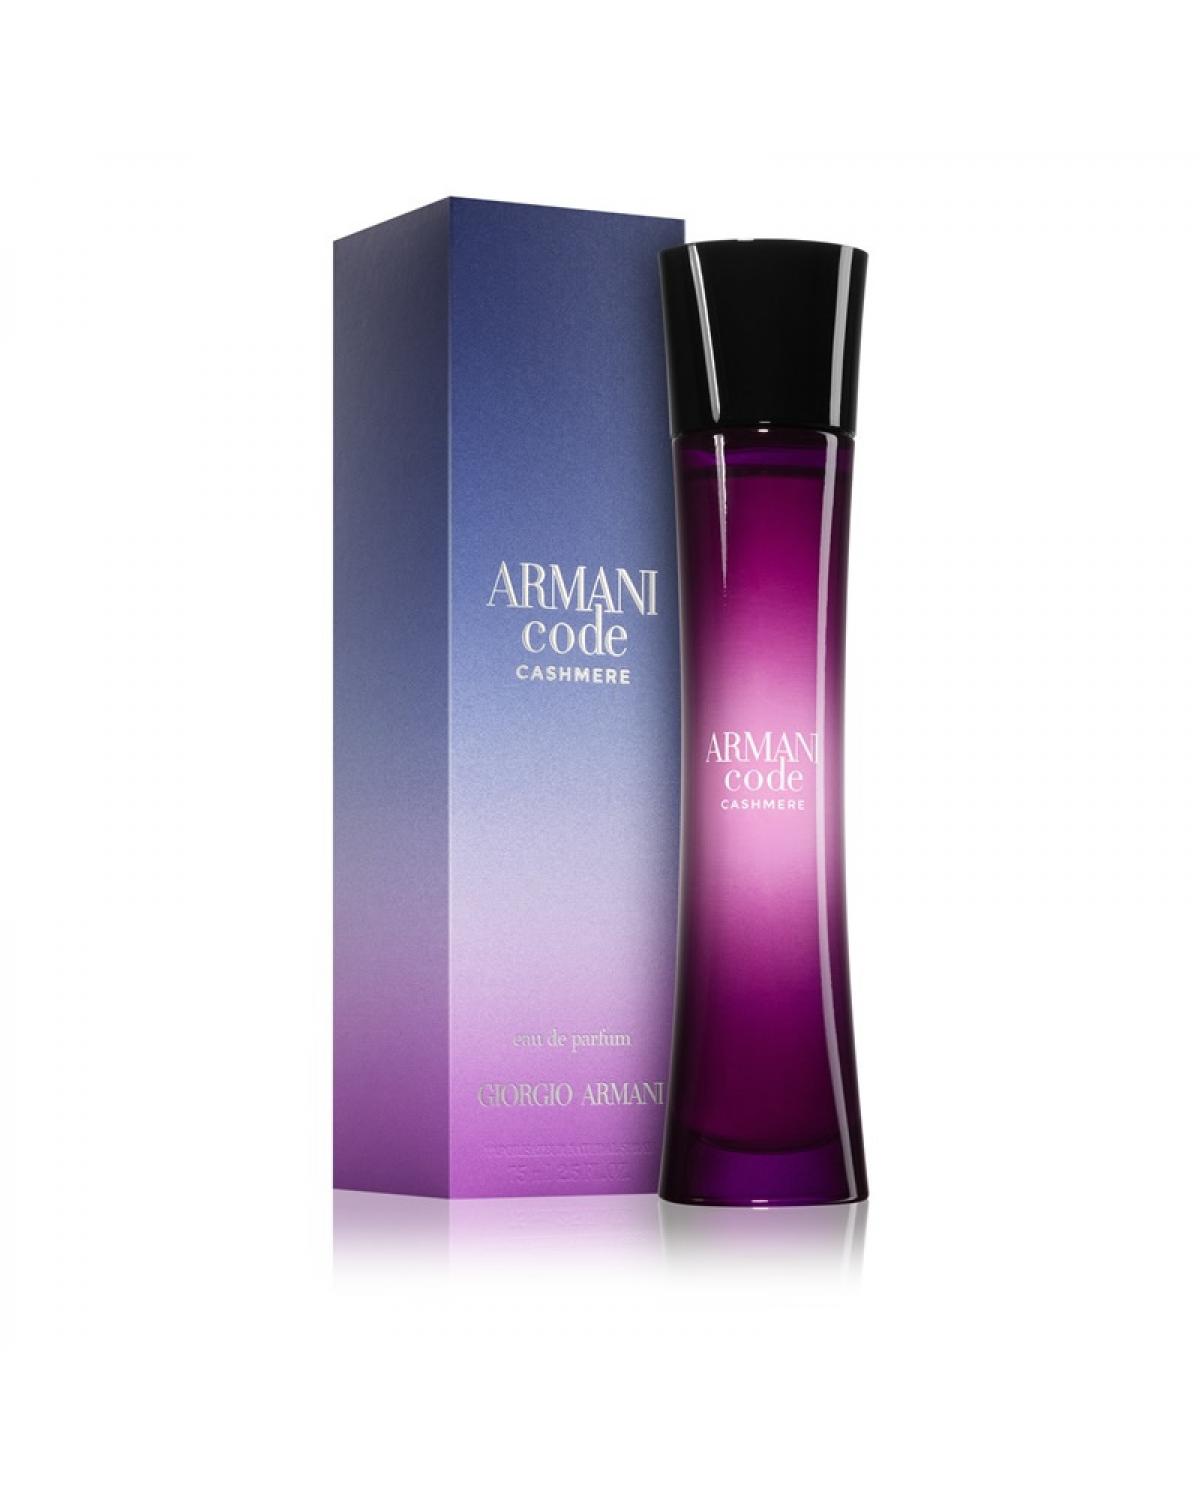 Armani Code Cashmere Giorgio Armani - Perfume Feminino - Eau de Parfum - 75ml